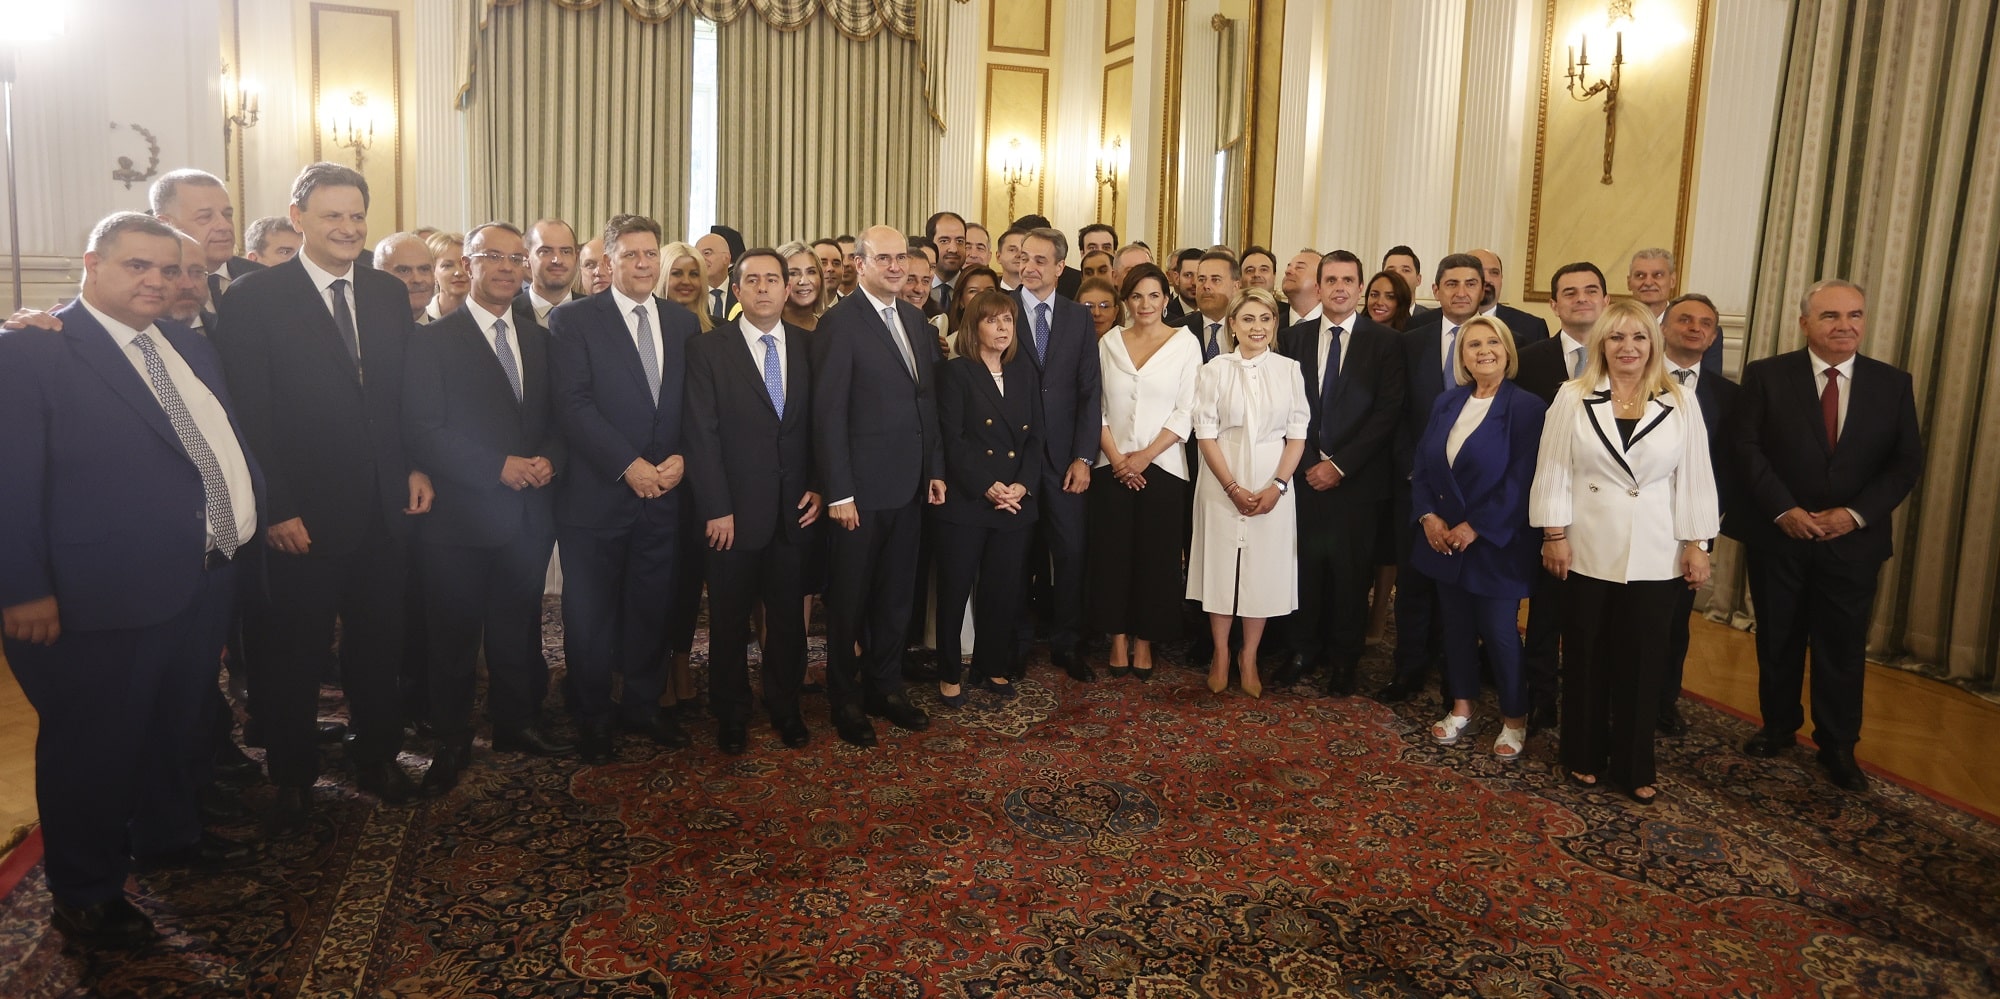 Ο Κυριάκος Μητσοτάκης και τα μέλη της νέας κυβέρνησης